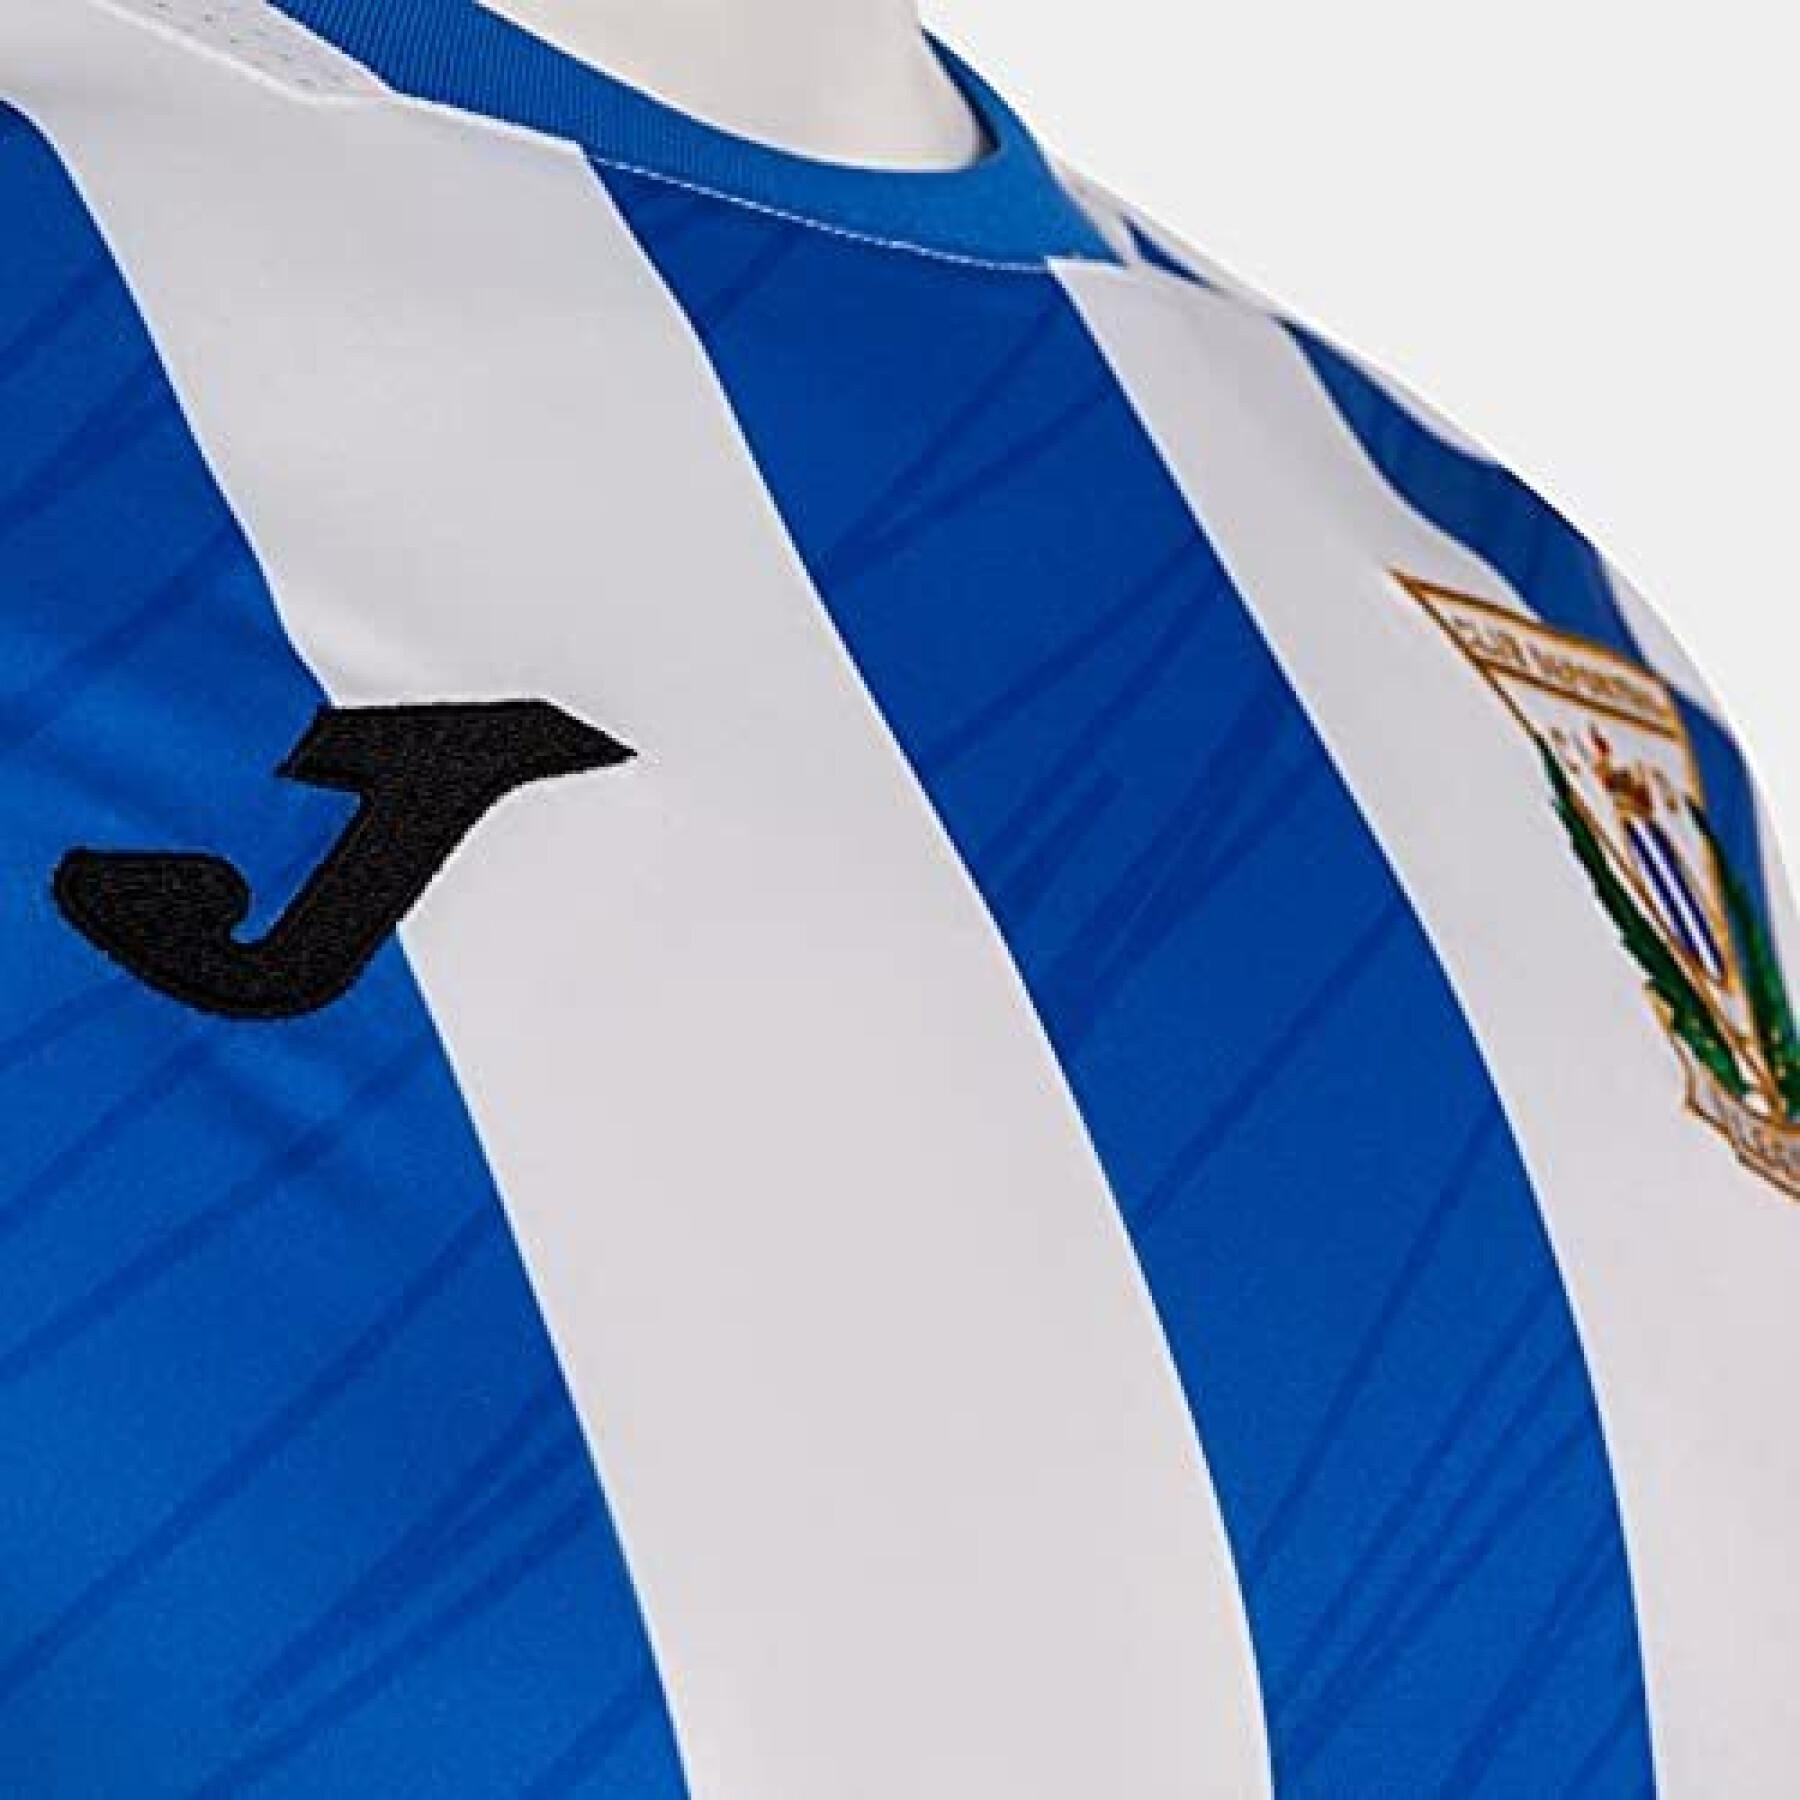 Koszulka domowa Leganés 2021/22